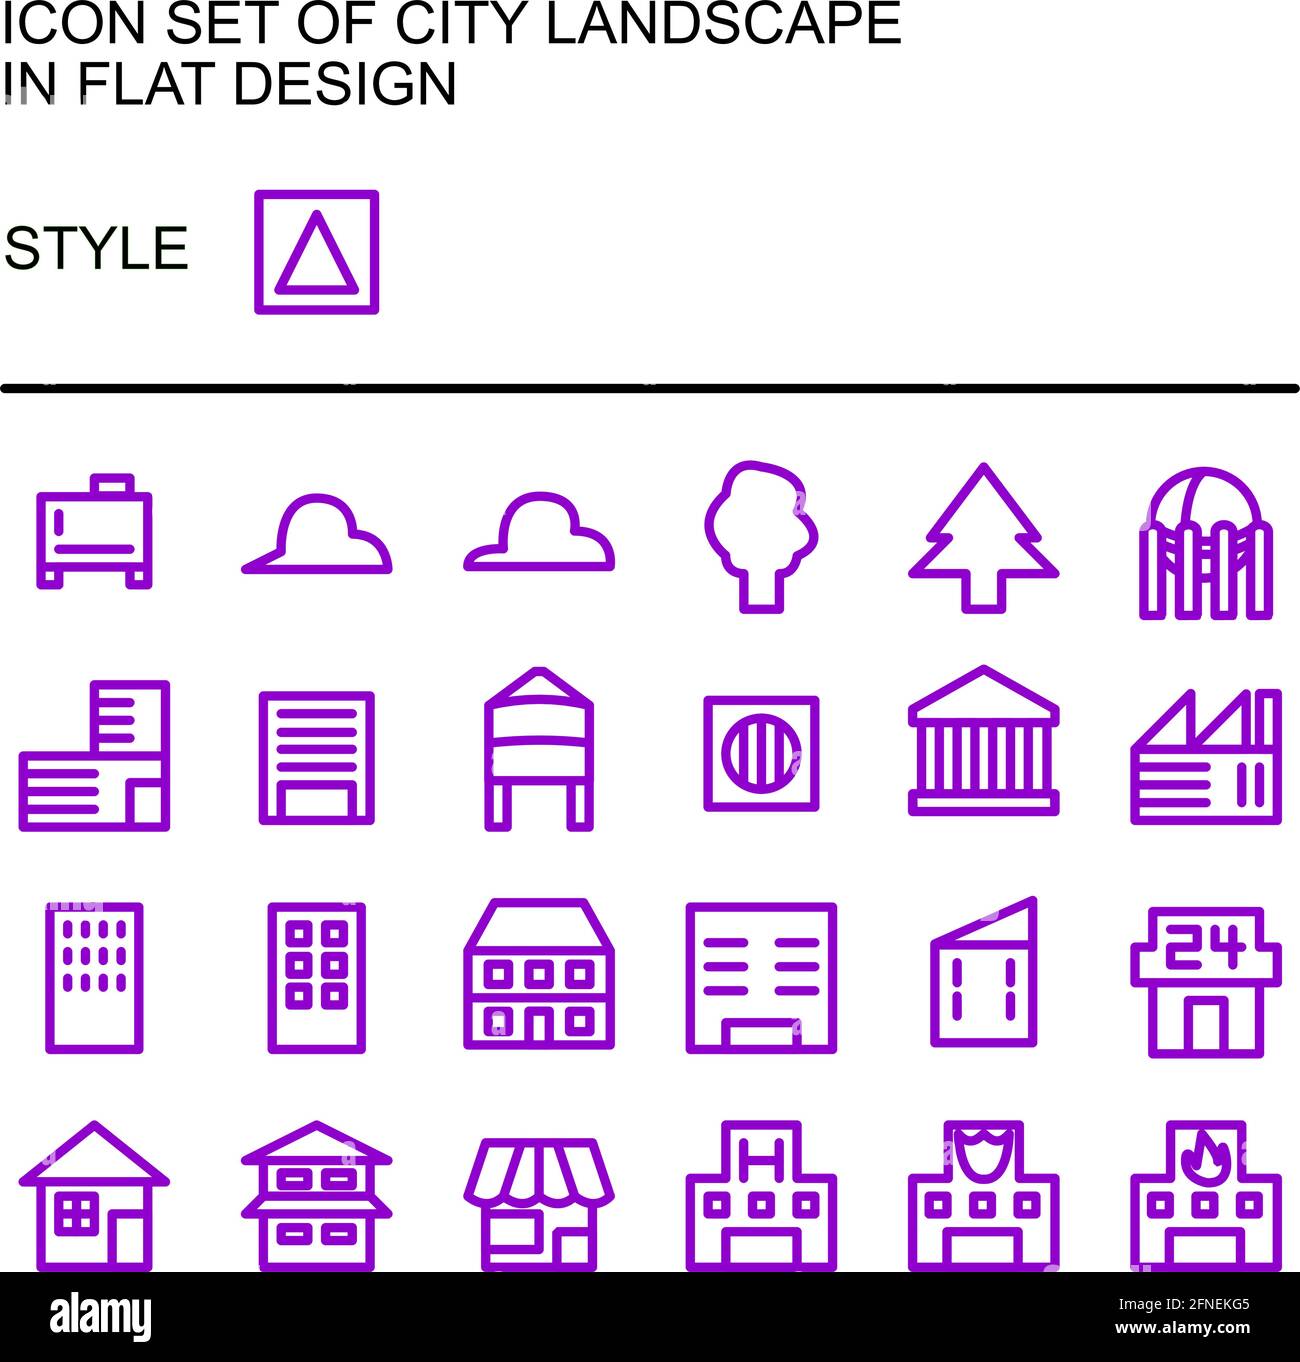 Symbol für die Stadtlandschaft in flachem Design mit violetten Linien und weißen Füllungen. Stock Vektor